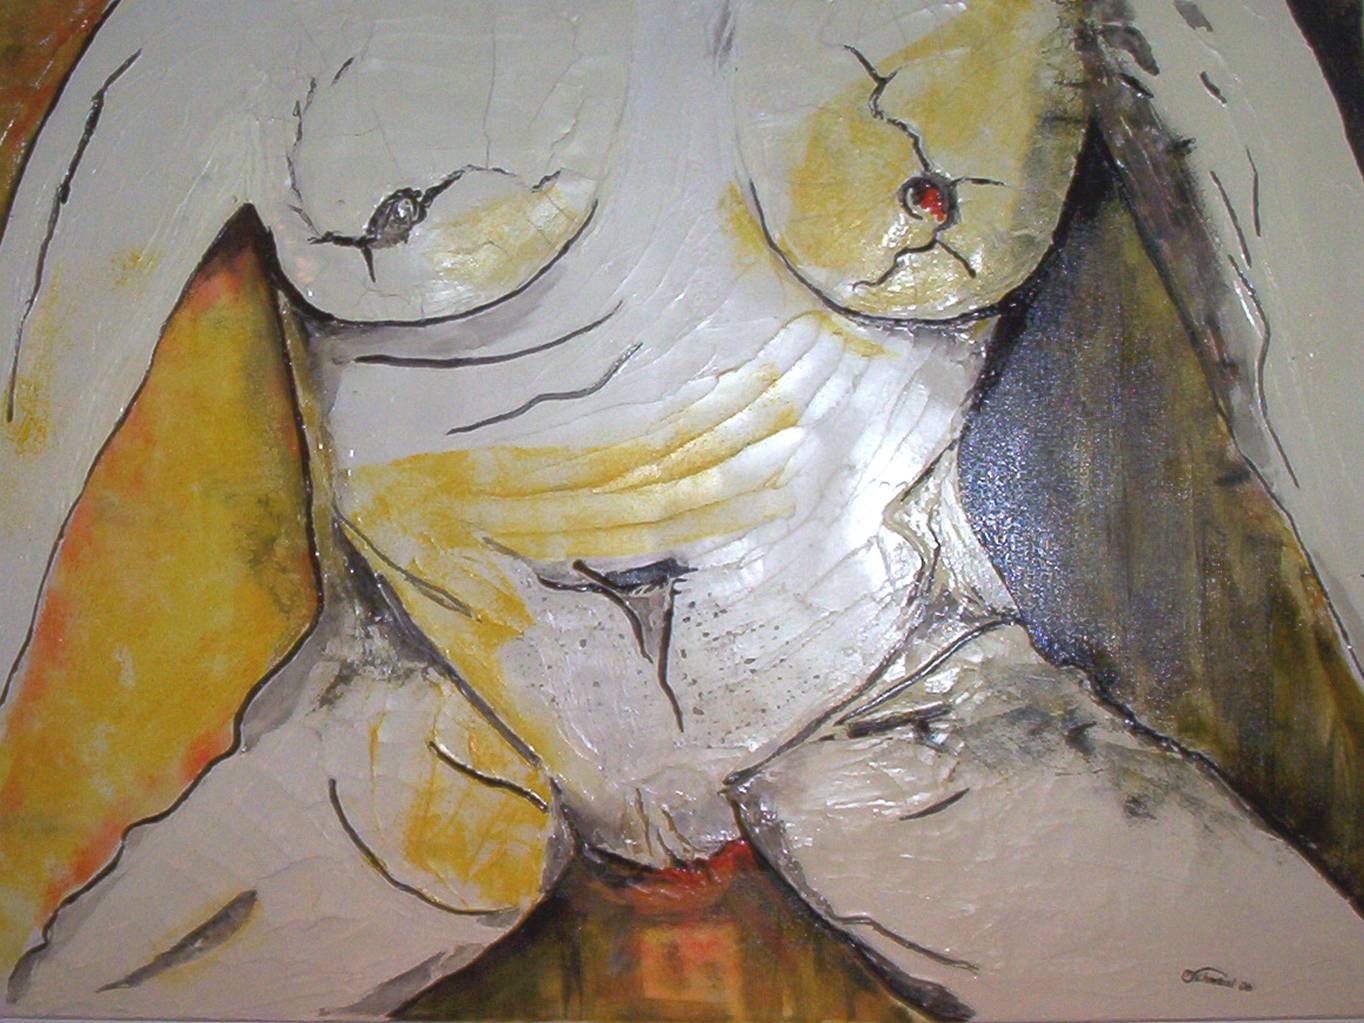 Frau nackt - Größe 1 x 1 m / Acryl und Spachtelmasse